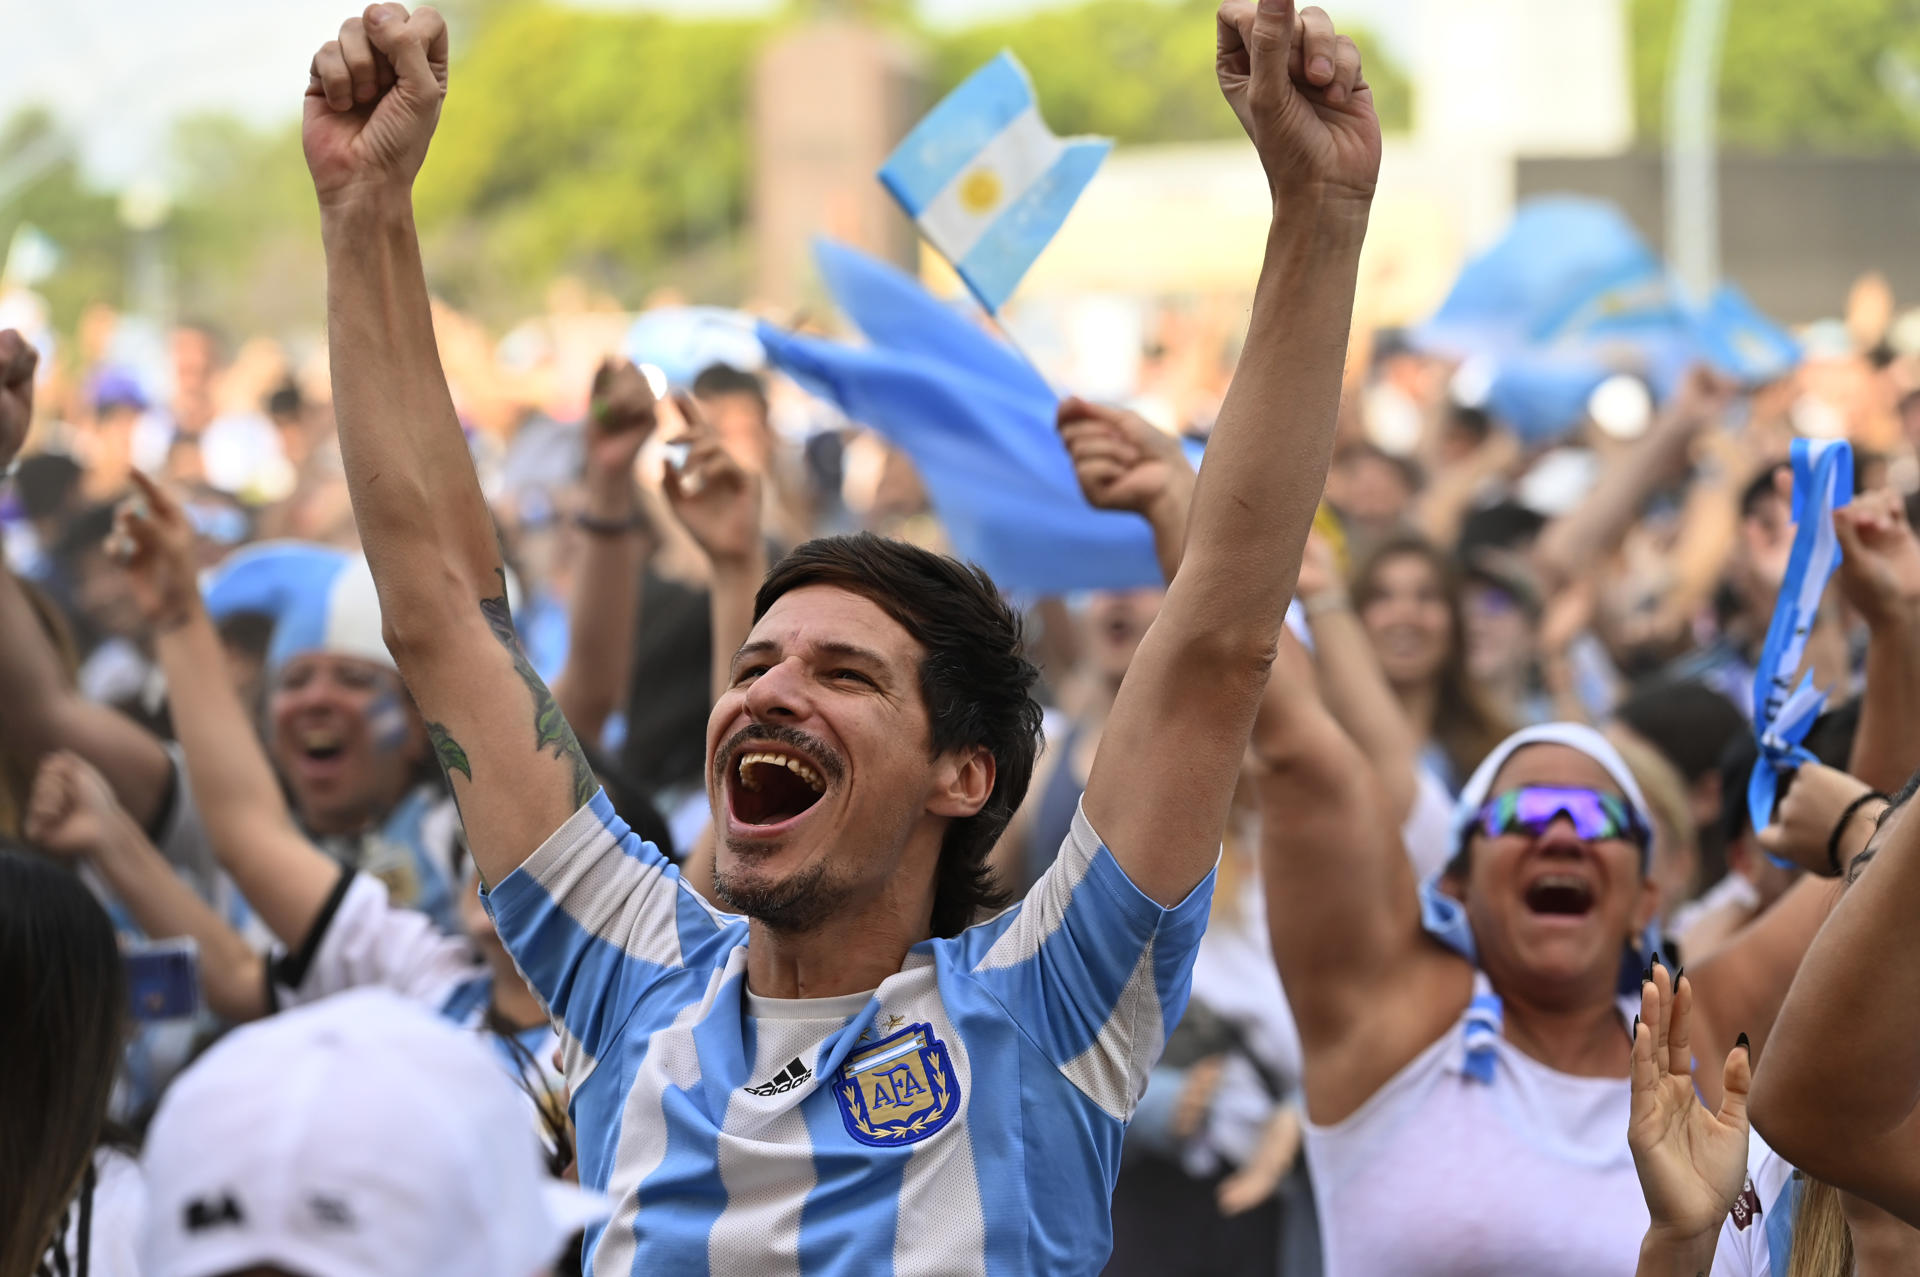 Aficionados argentinos celebran hoy el triunfo de su seleccionado nacional contra Polonia y la clasificación a octavos de final del Mundial de Qatar 2022, en un fan fest en Buenos Aires (Argentina). EFE/Matías Martín Campaya